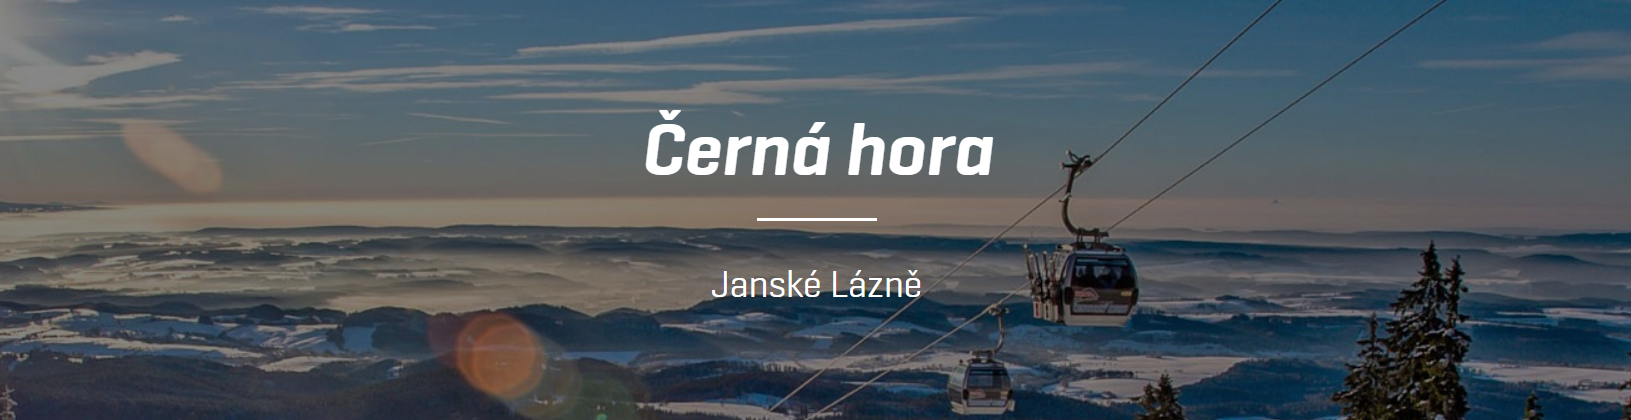 Ośrodek narciarski Černá hora